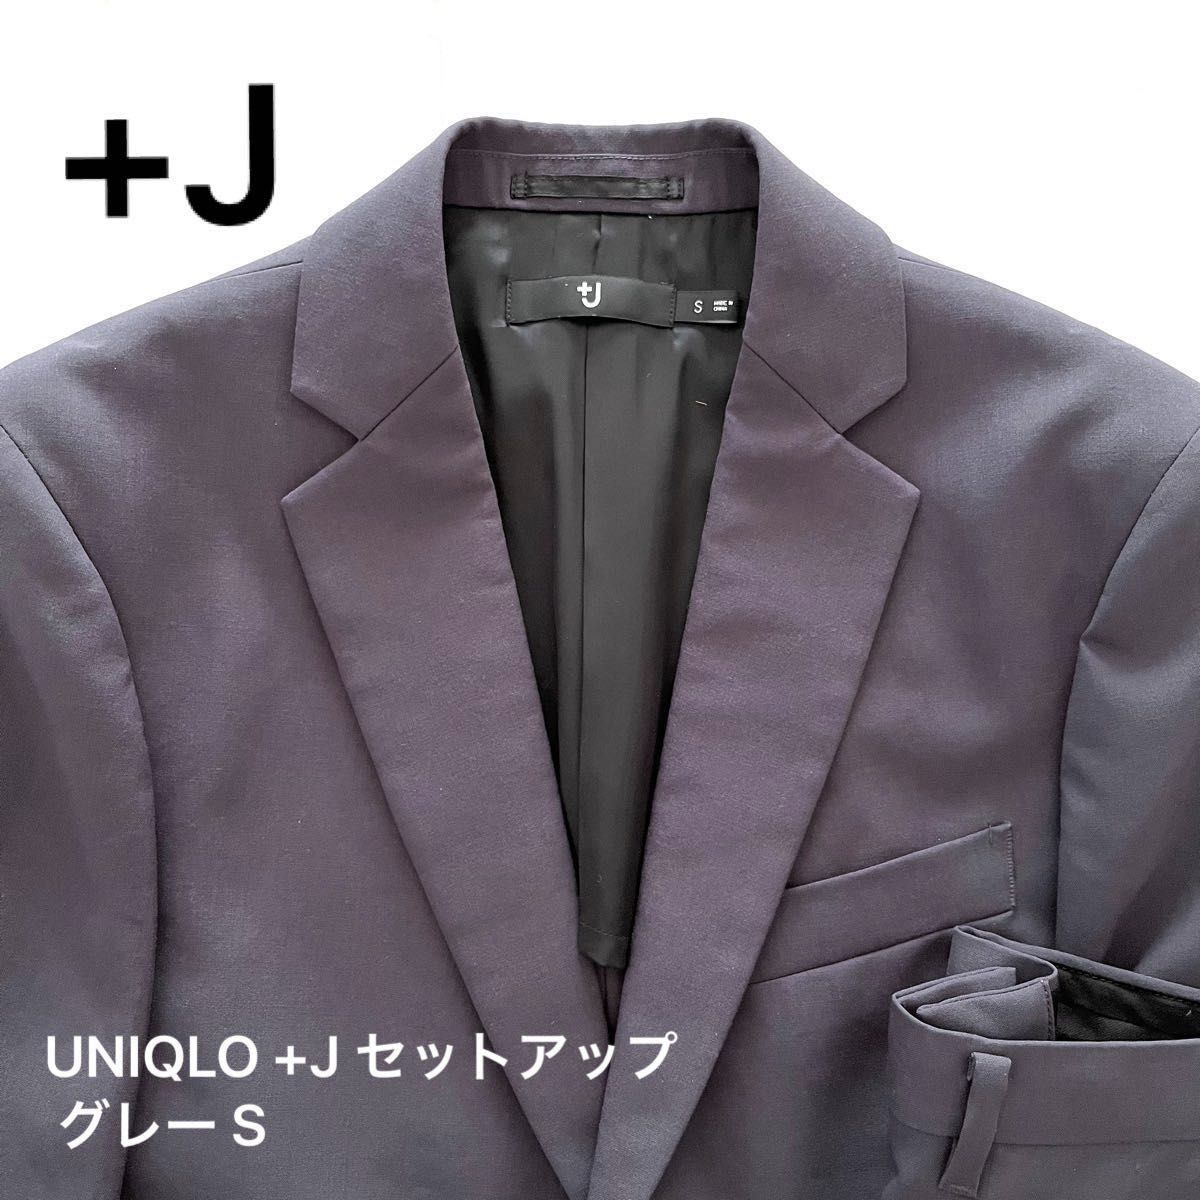 UNIQLO ユニクロ +J 2021 ウールテーラードジャケット・スリムフィット